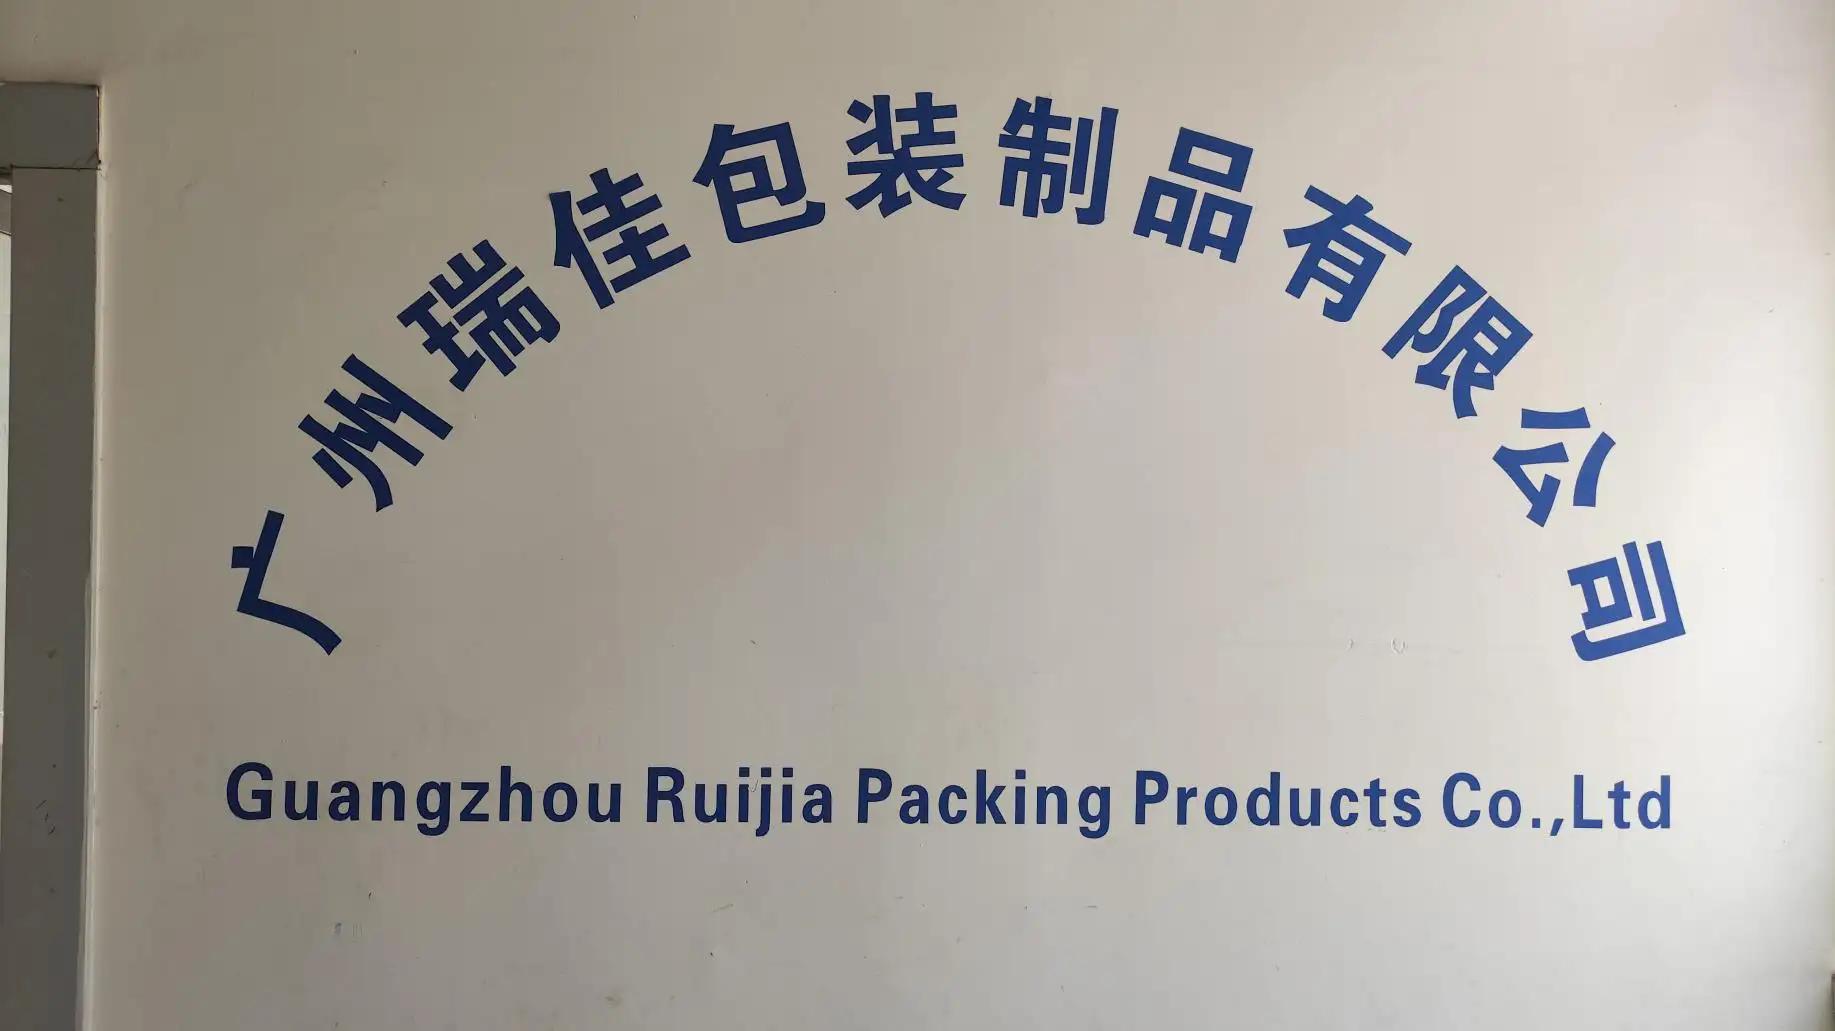 Guangzhou Ruijia Packing Products Co., Ltd.